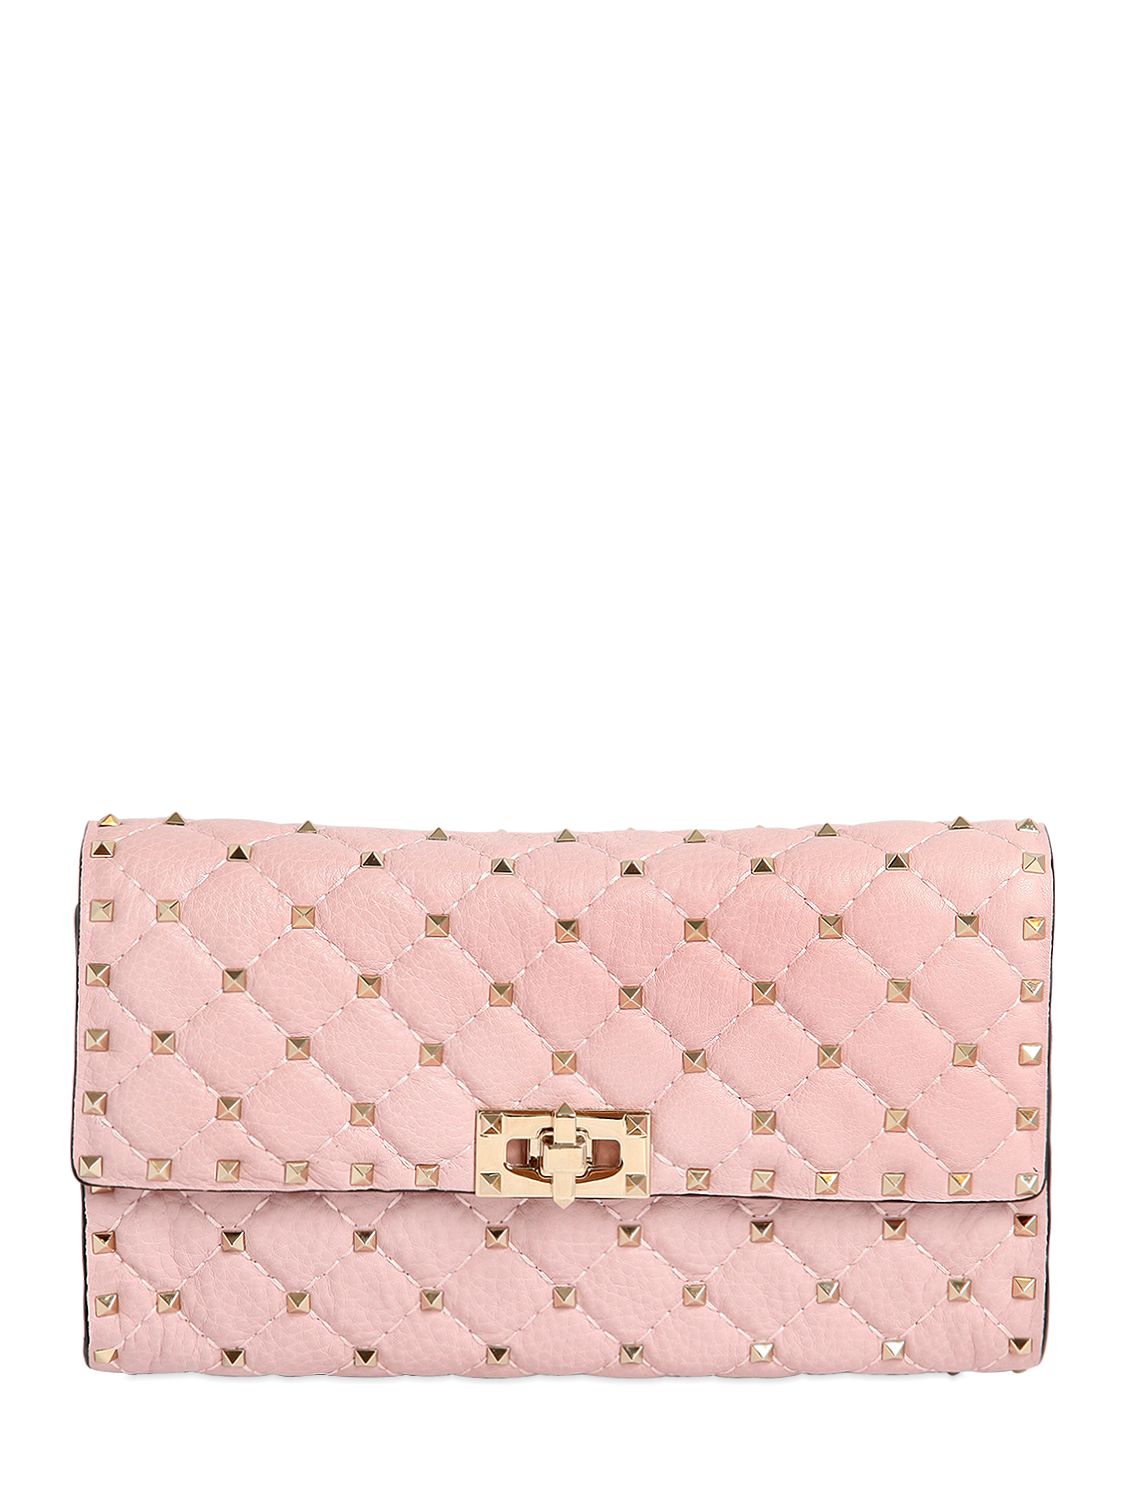 Valentino pochette in pelle trapuntata con borchie rosa chiaro donna borse,valentino sneaker vendita,abito tubino valentino,boutique